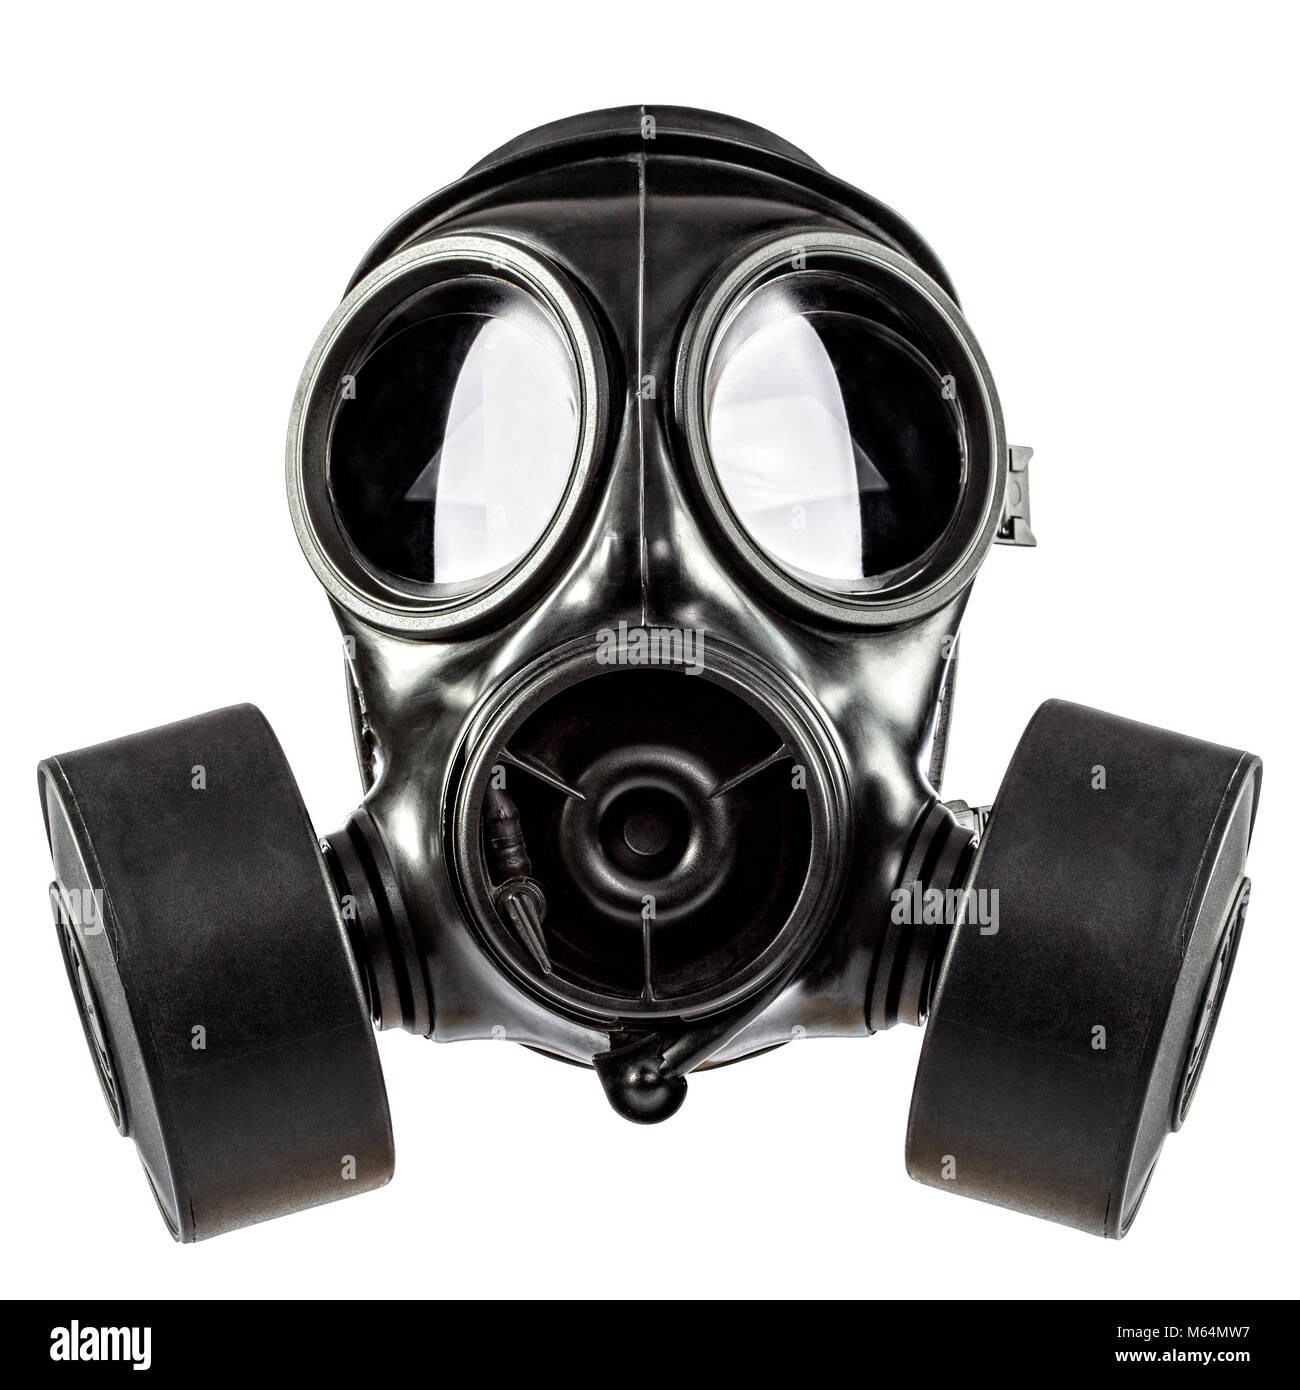 Gasmaske mit Filter auf weißem Hintergrund Stockfotografie - Alamy